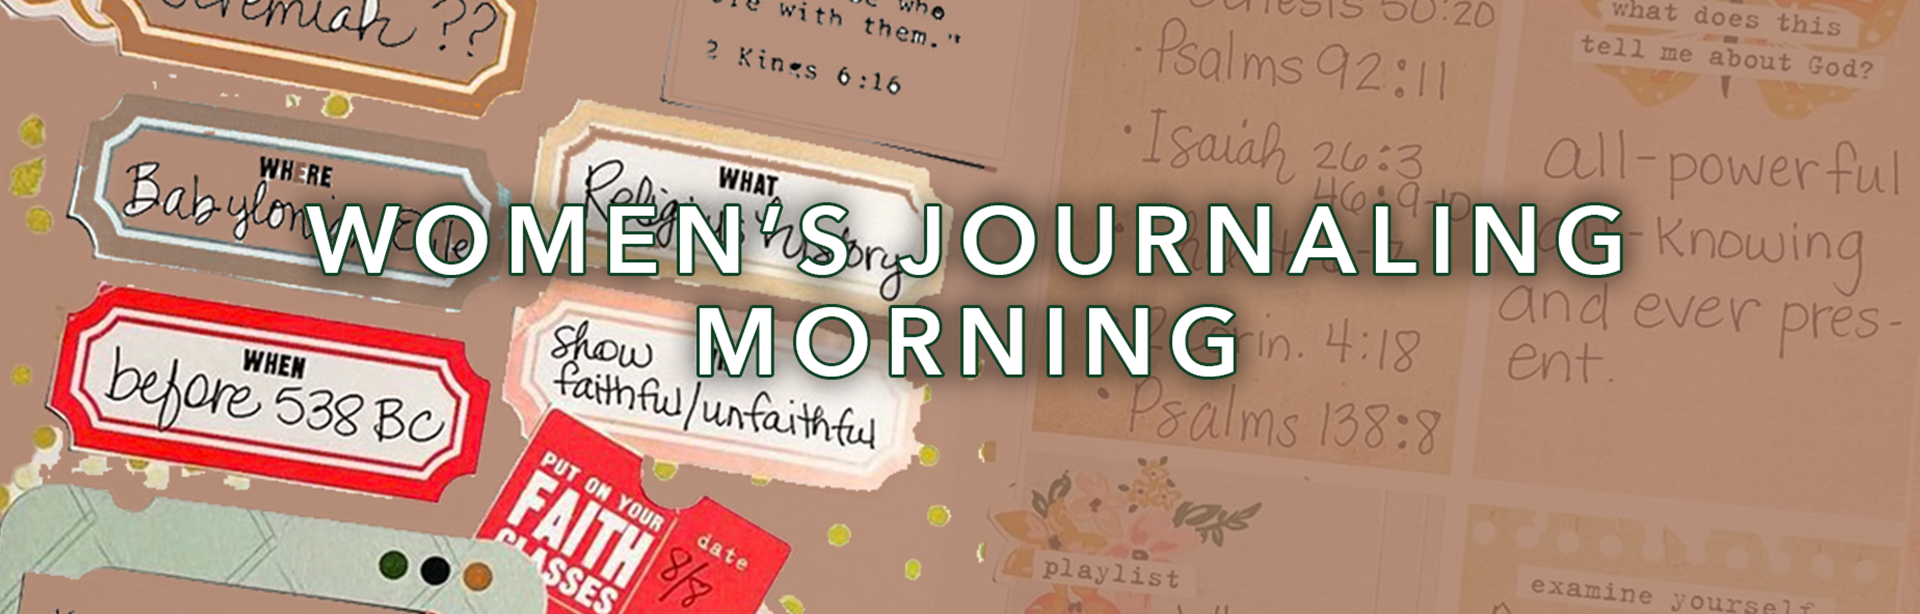 Women's Journaling Morning